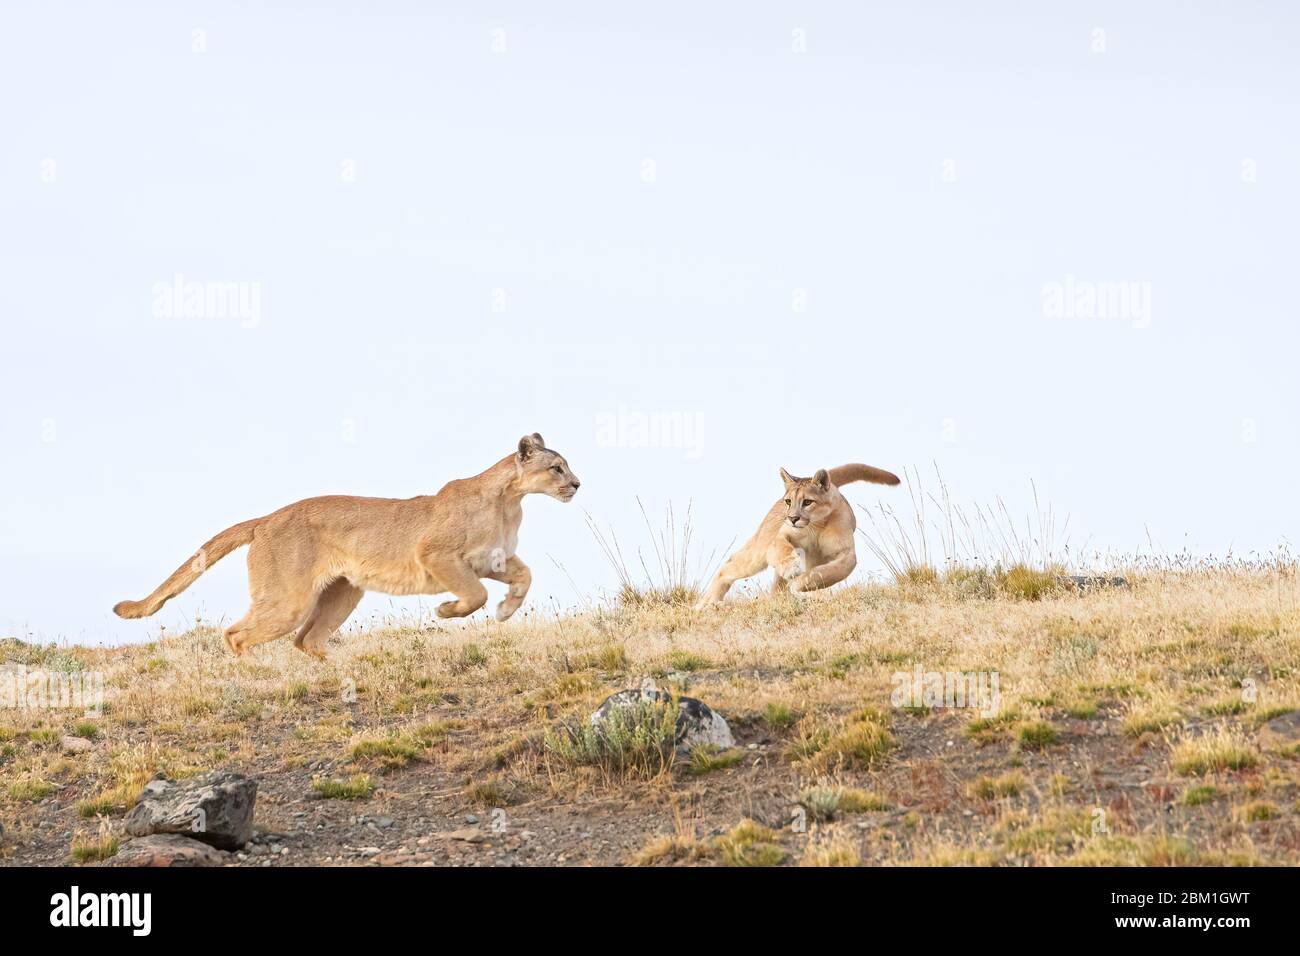 Ein Paar junger Puma-Jungen, die auf einem Hügel laufen und gegen den blauen Himmel ragen. Auch bekannt als Cougar oder Mountain Lion Stockfoto